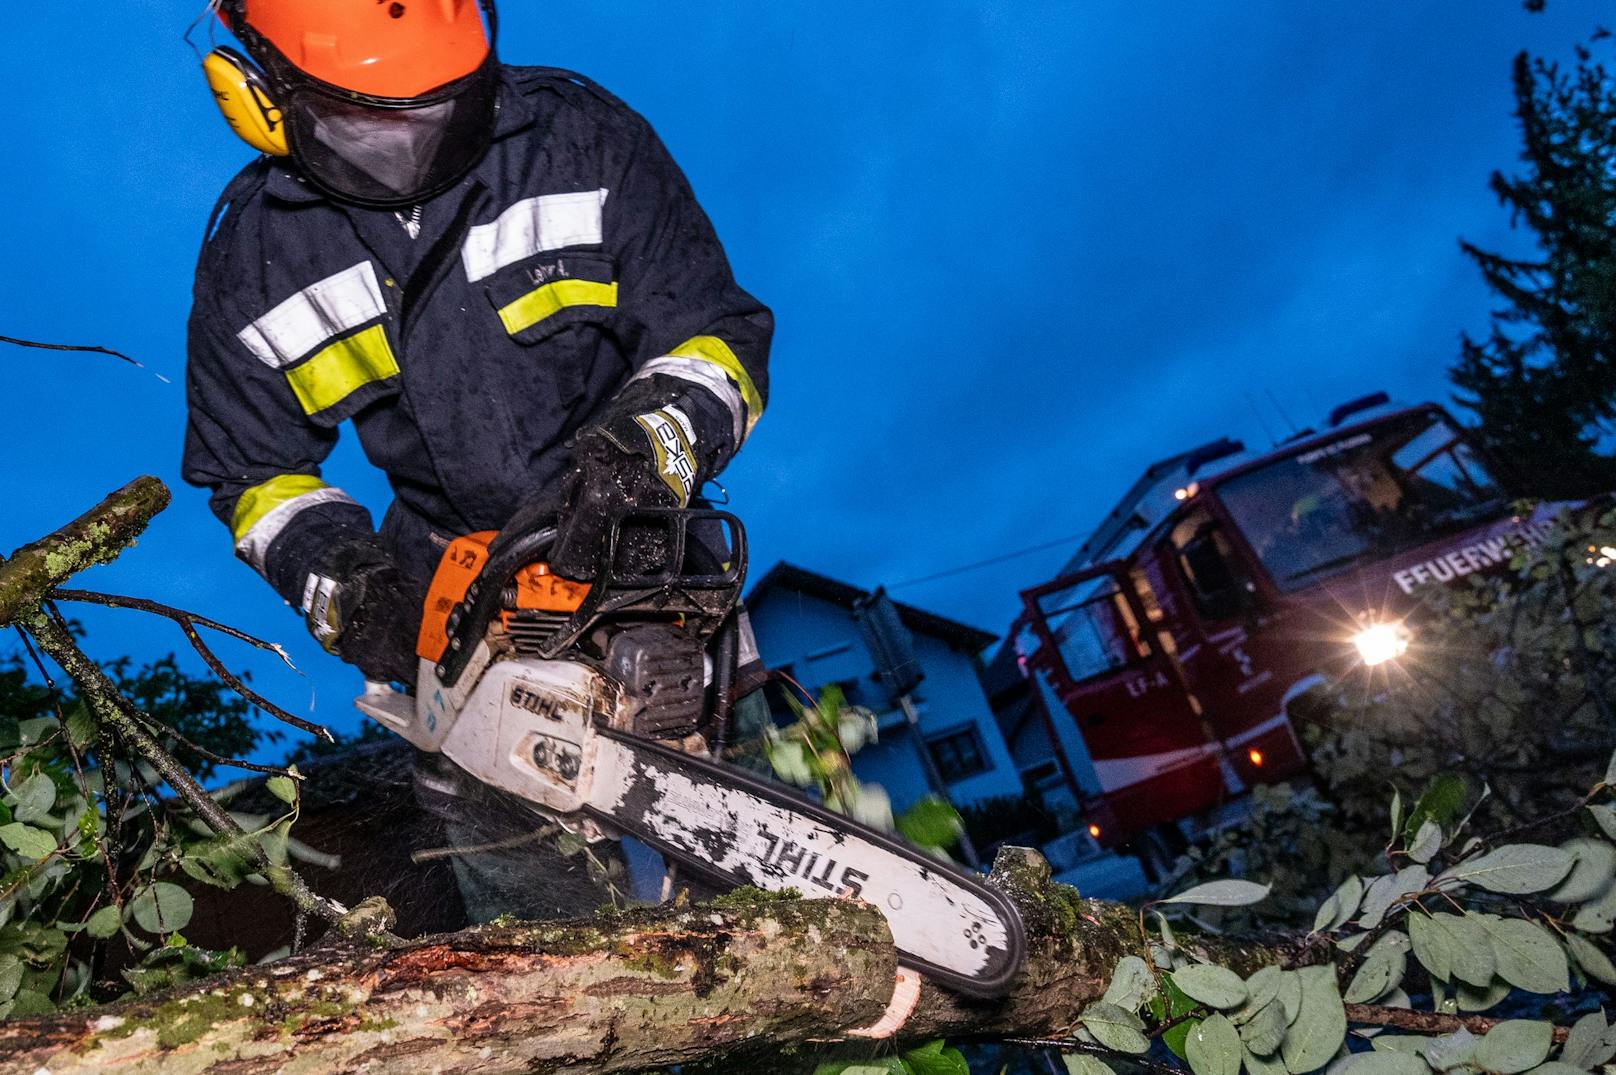 Einsatzkräfte der Feuerwehr am Dienstag, 29. Juni 2021, bei Aufräumungsarbeiten nach Unwetterschäden in St. Florian bei Linz.